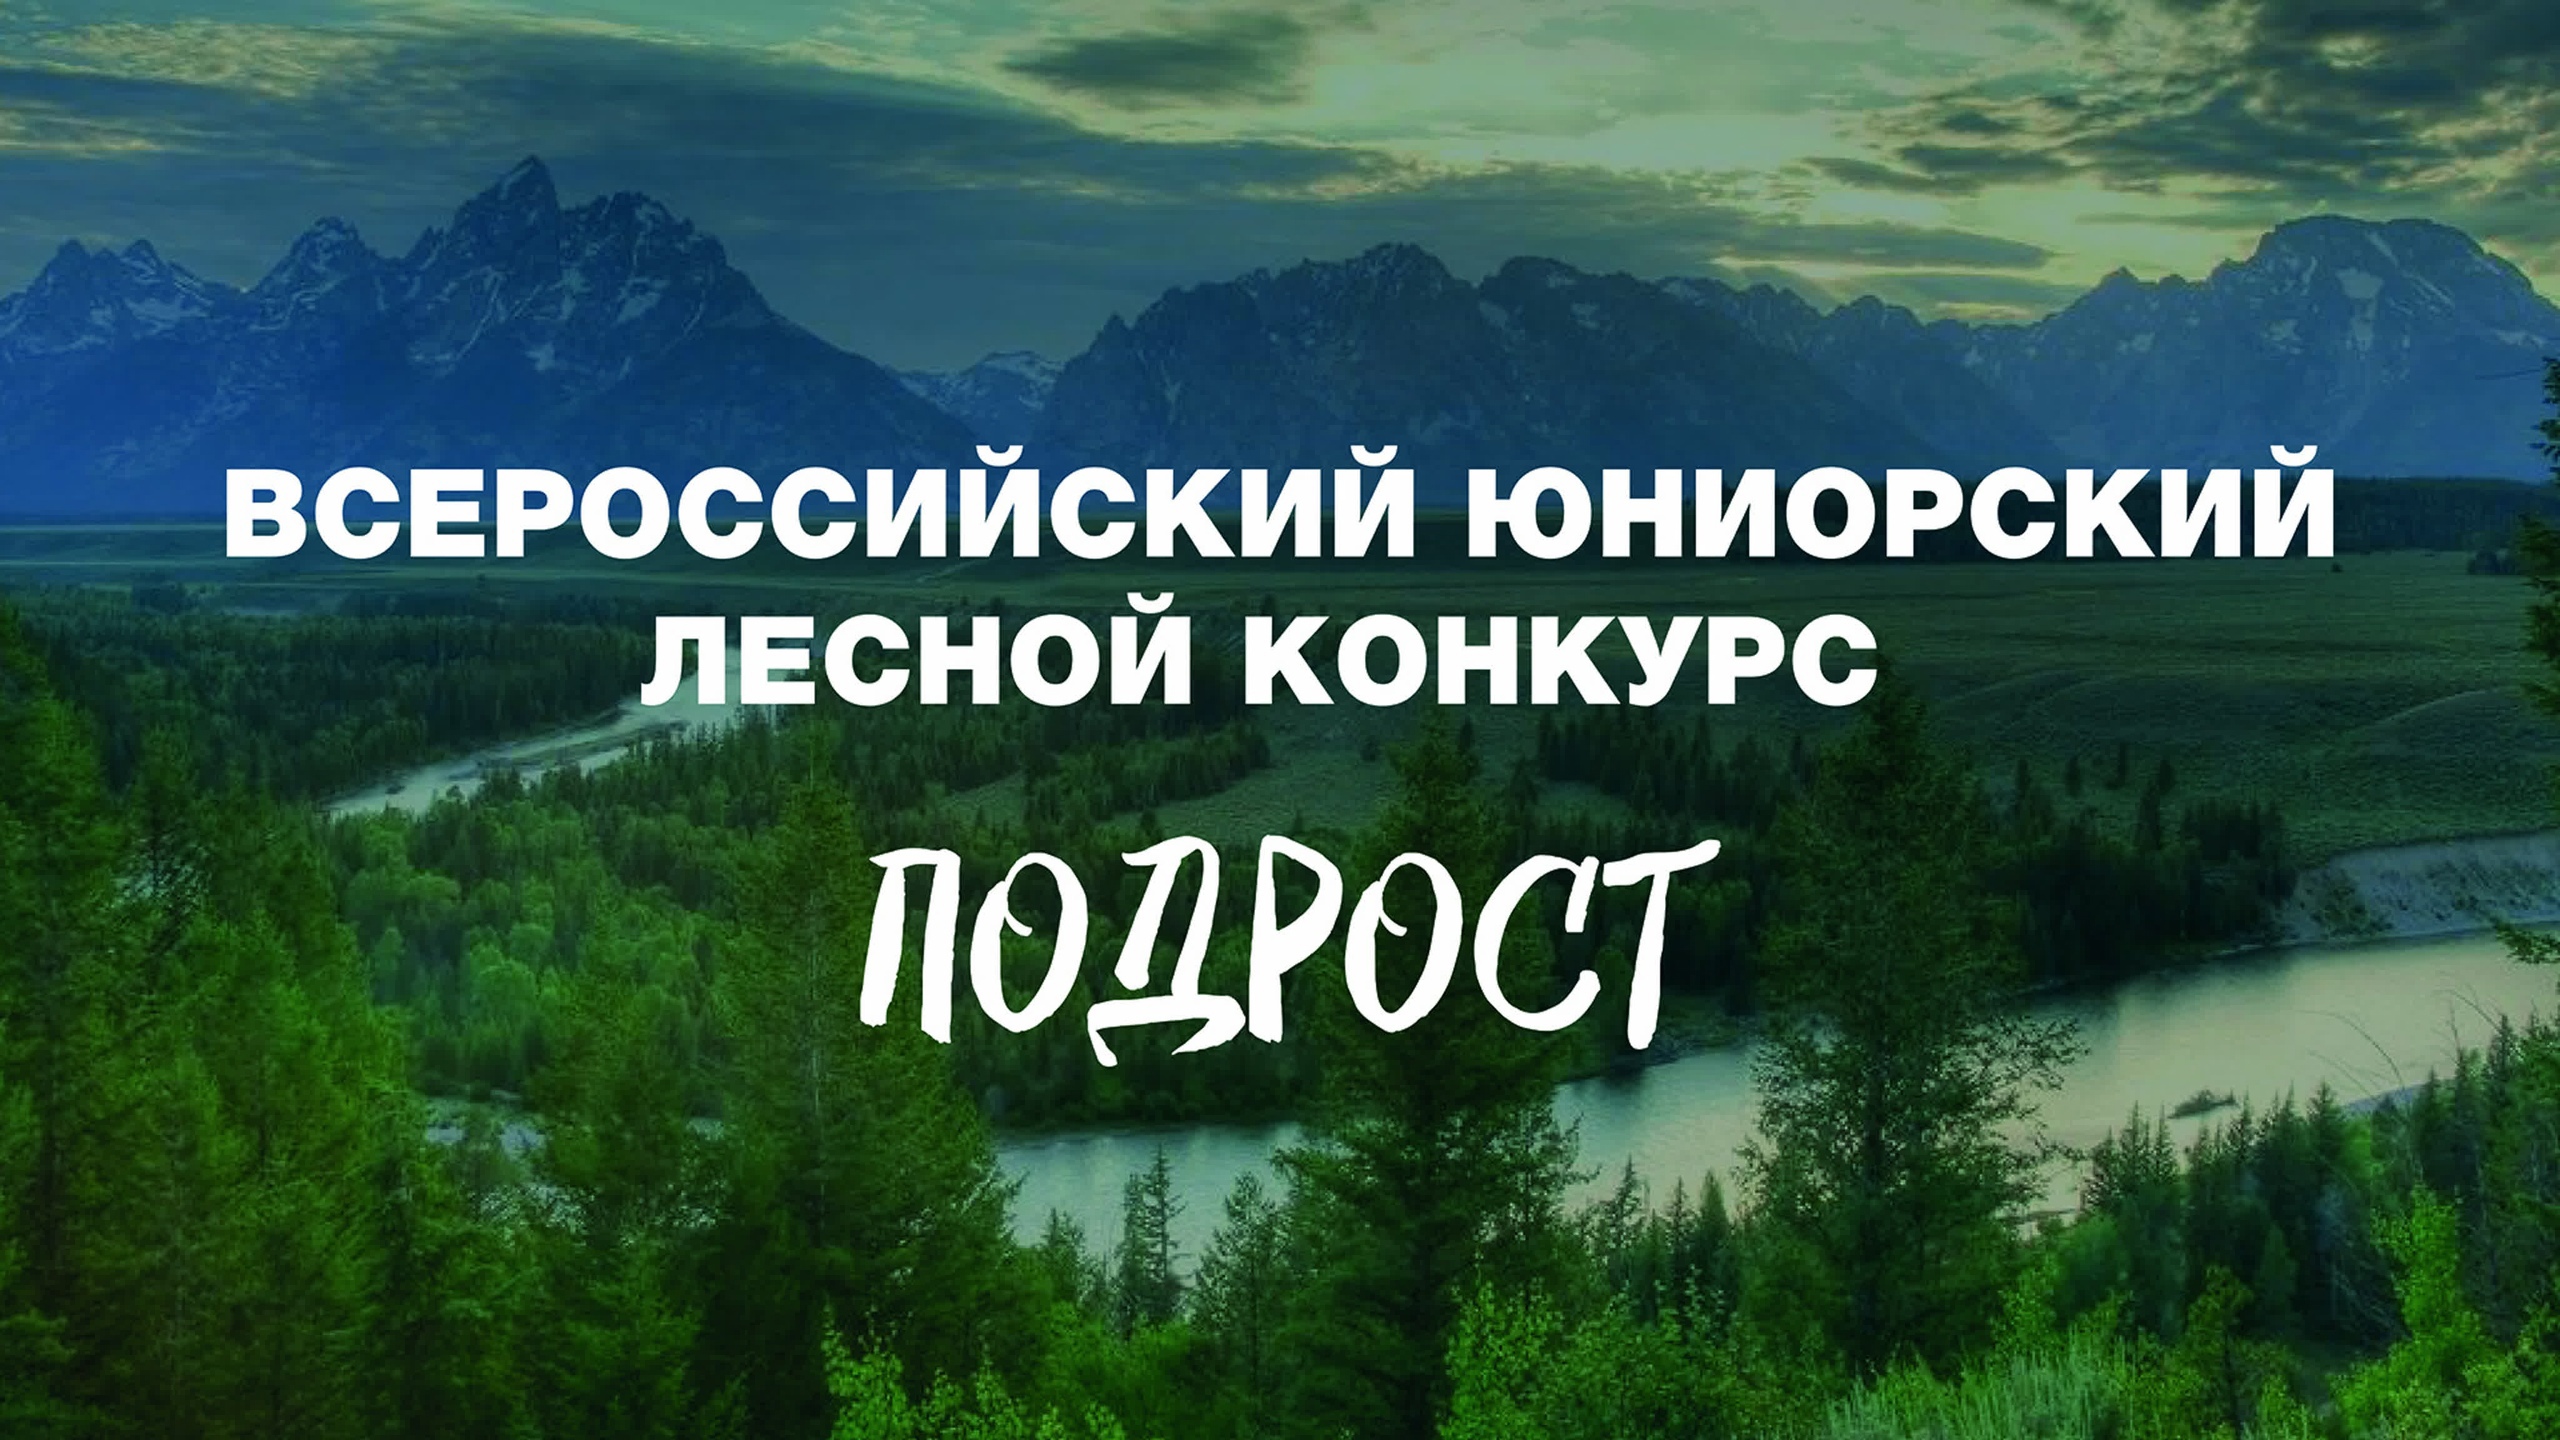 Всероссийский юниорский лесной конкурс &amp;quot;Подрост&amp;quot;.